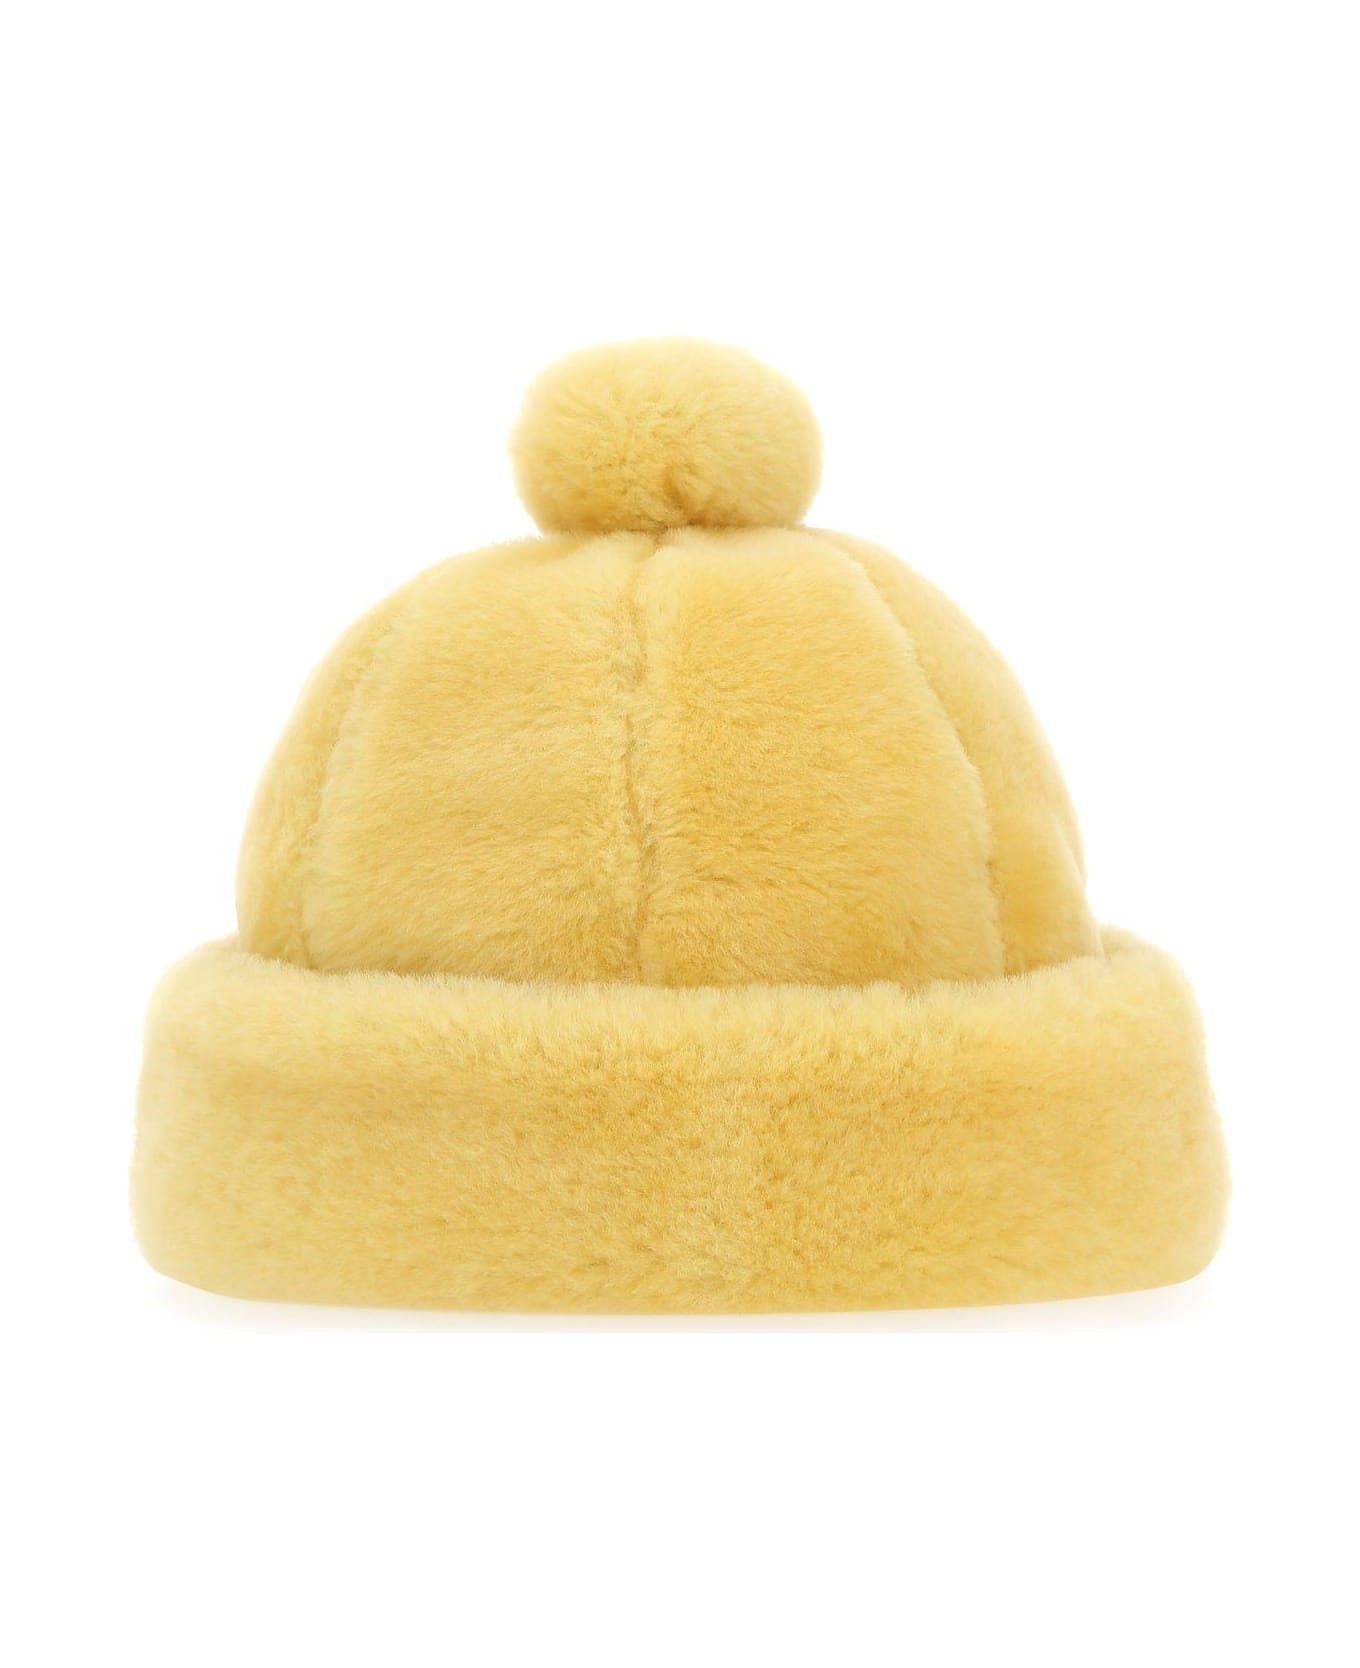 Lanvin Pastel Yellow Shearling Beanie Hat - YELLOW 帽子